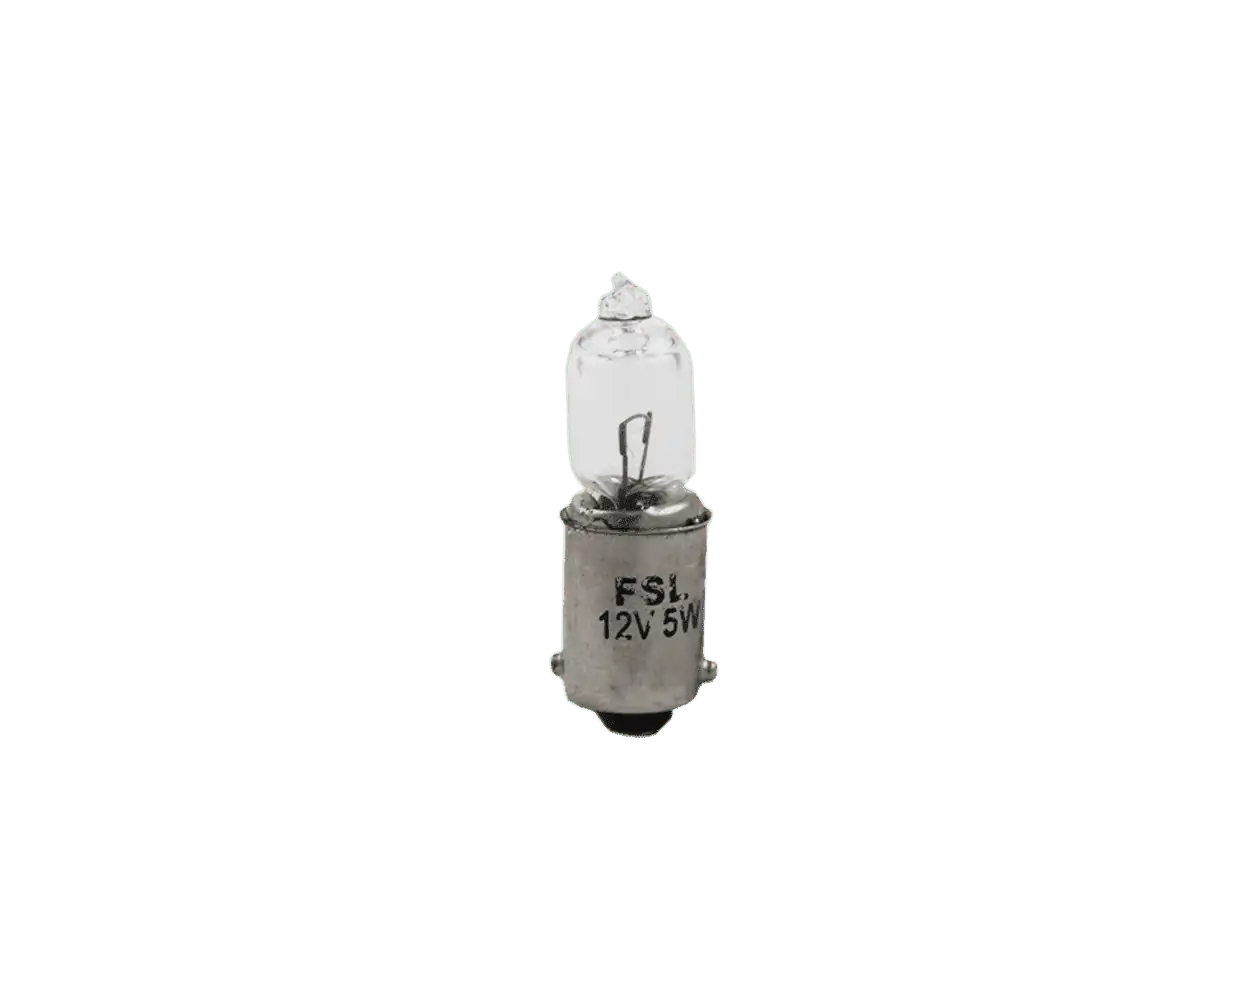 FSL Miniature Incandescent Torch Signal Filament Lamp 5W 12V BA9s